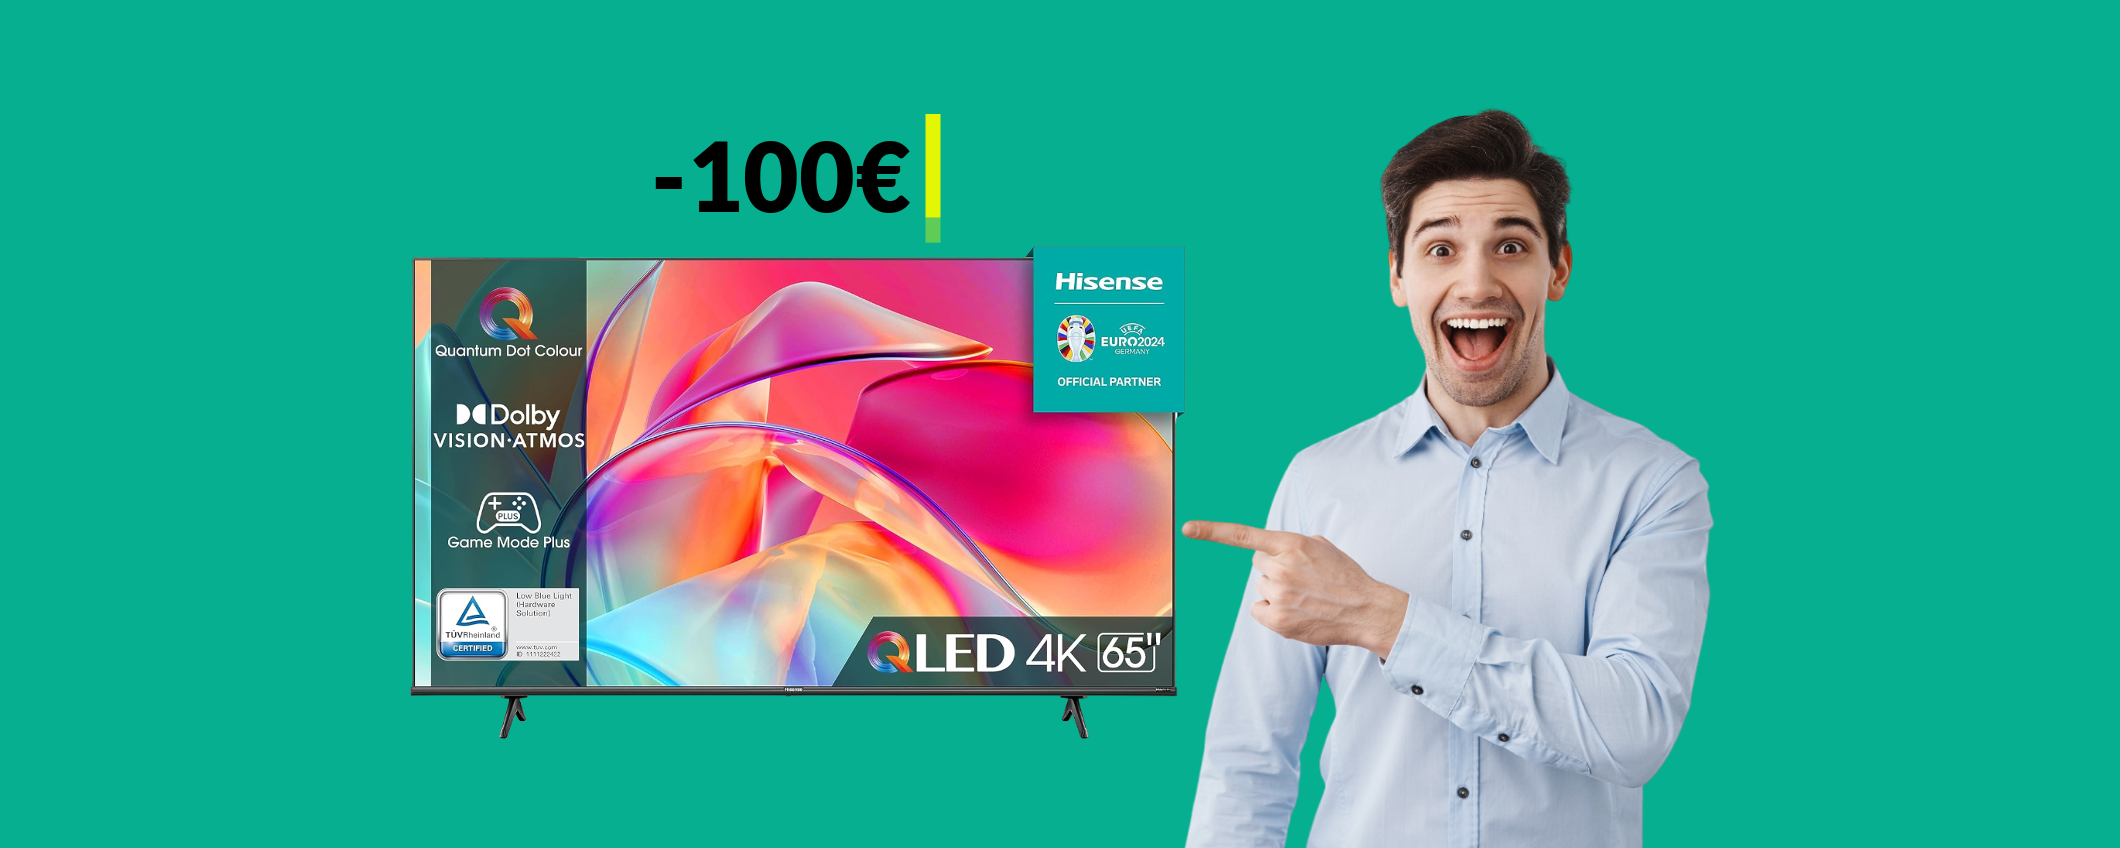 Smart TV 4K 65'' Hisense: con questa offerta puoi risparmiare 100€